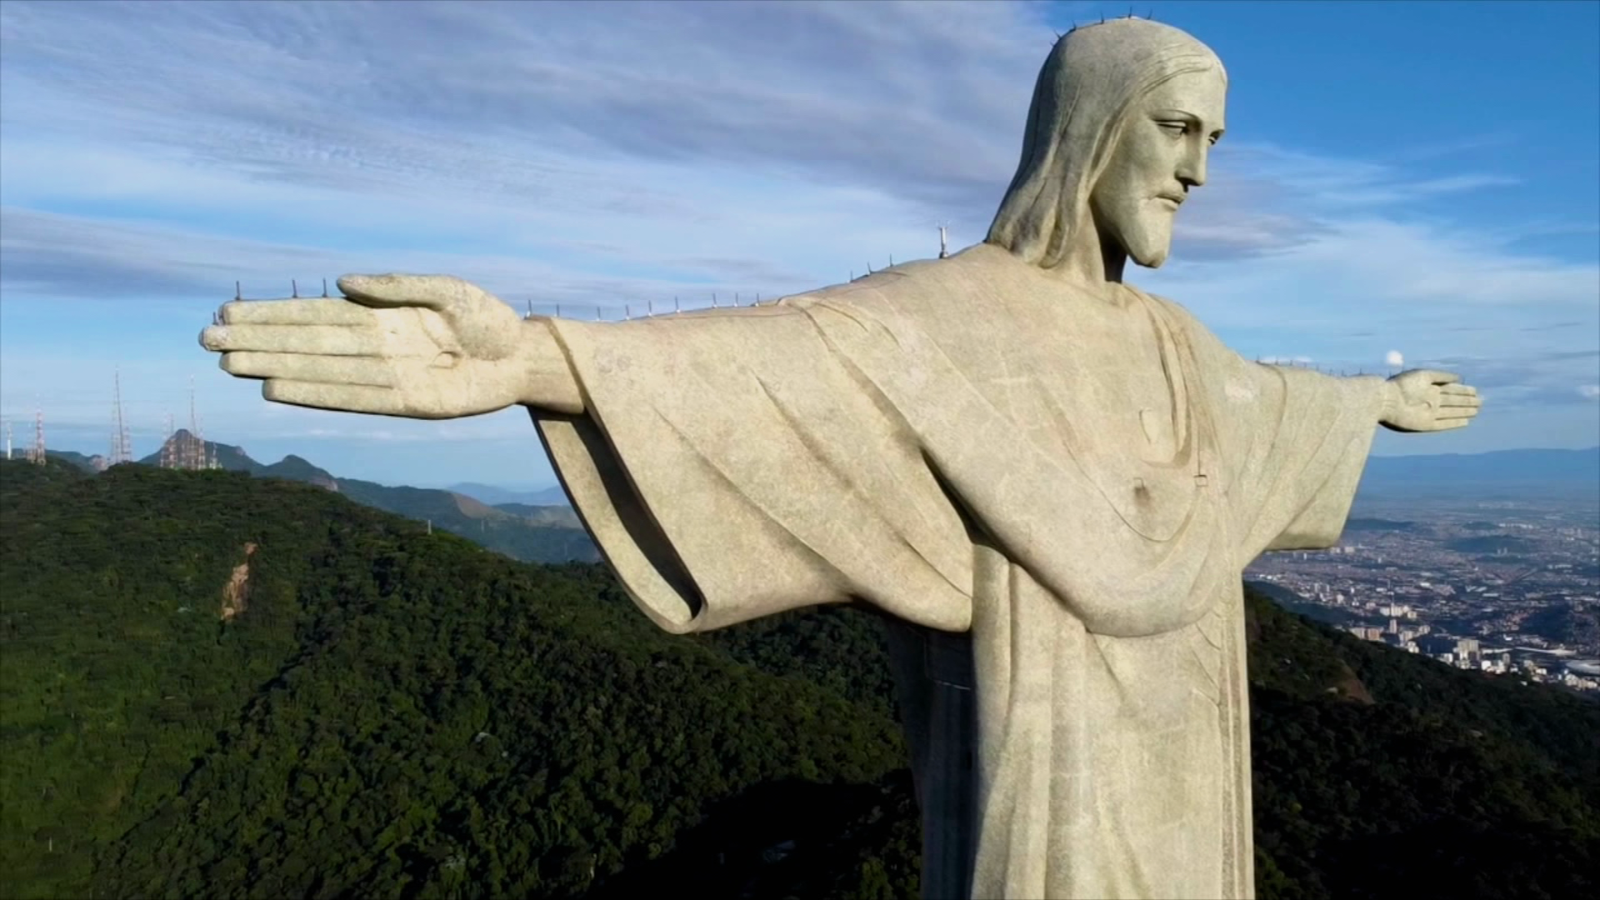 220415173313-cristo-redentor-rio-de-janeiro-brasil-estatua-historia-cnn-original-pkg-00011818-full-169-9478961